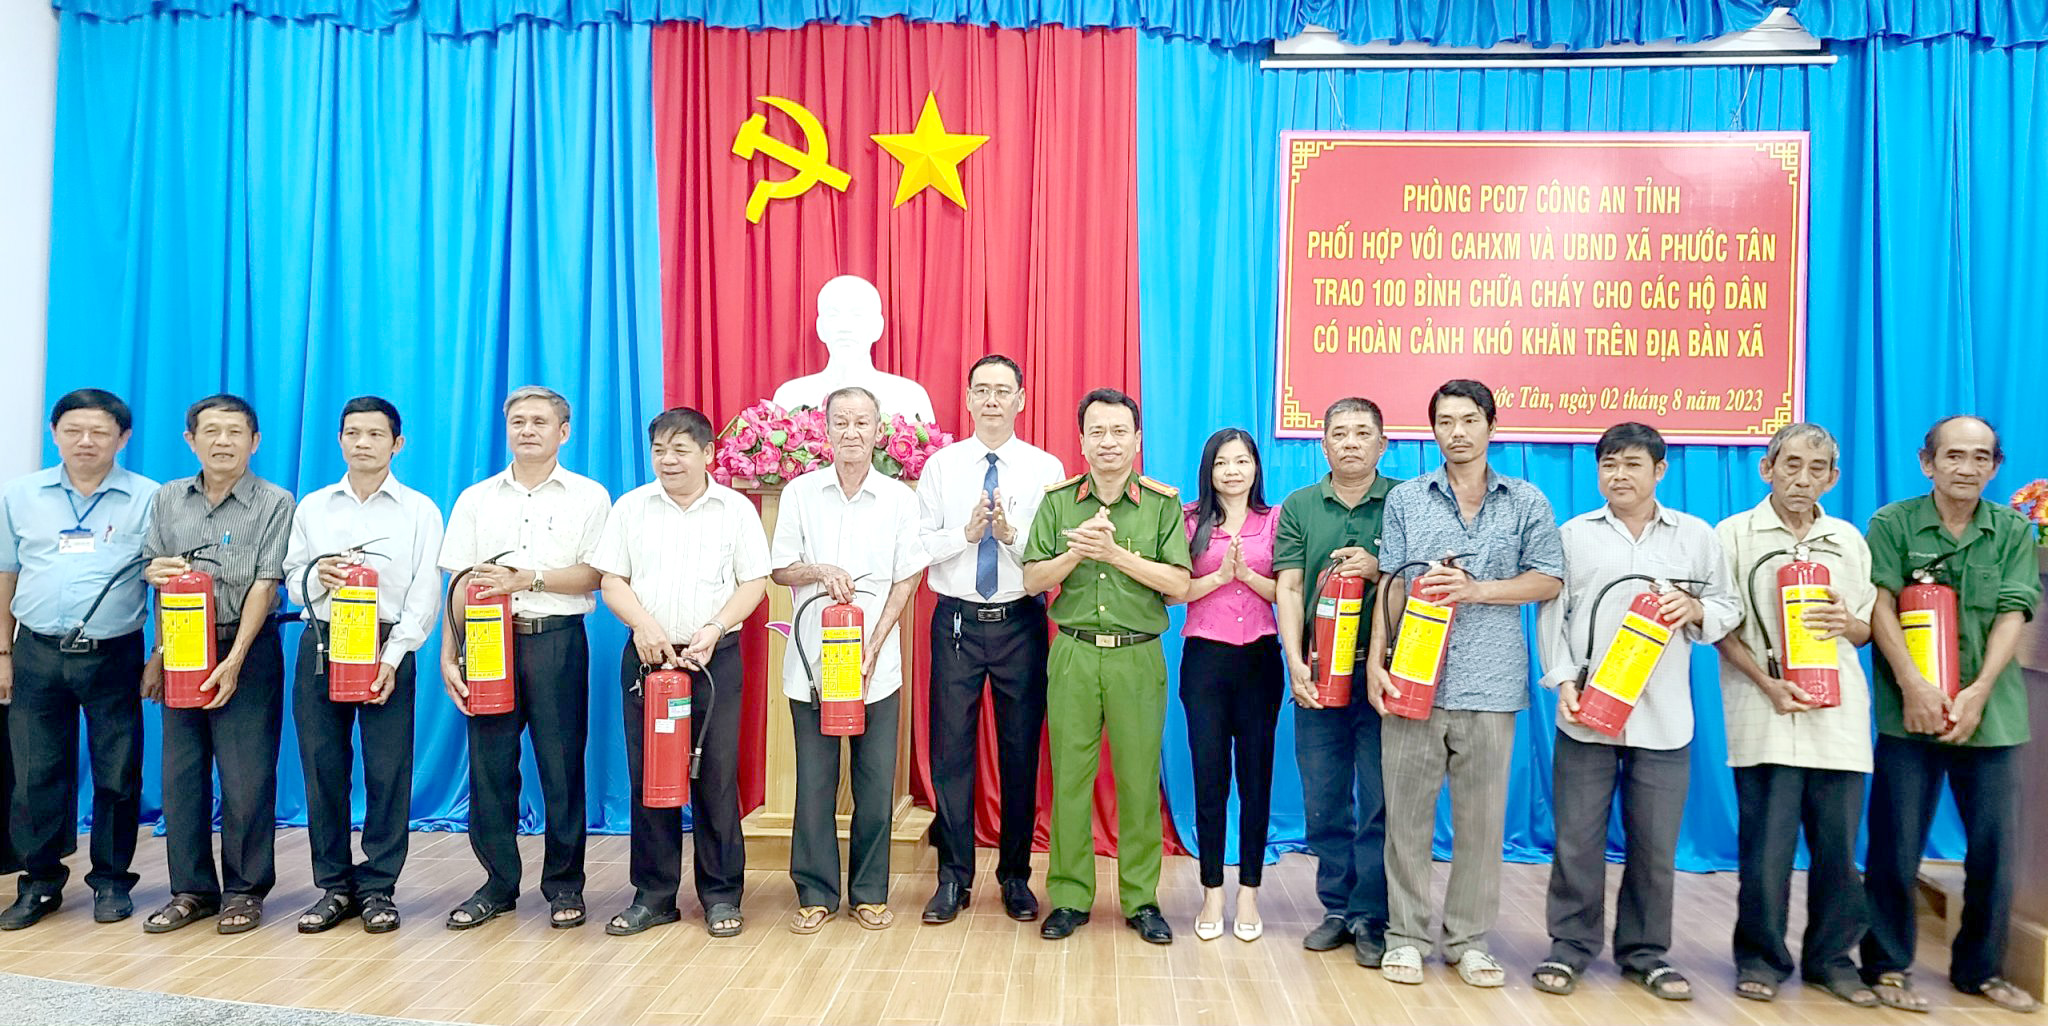 Đại diện Phòng Cảnh sát PCCC và CNCH Công an tỉnh, Công an huyện Xuyên Mộc trao thiết bị PCCC  cho các hộ có hoàn cảnh khó khăn trên địa bàn xã Phước Tân và xã Tân Lâm.